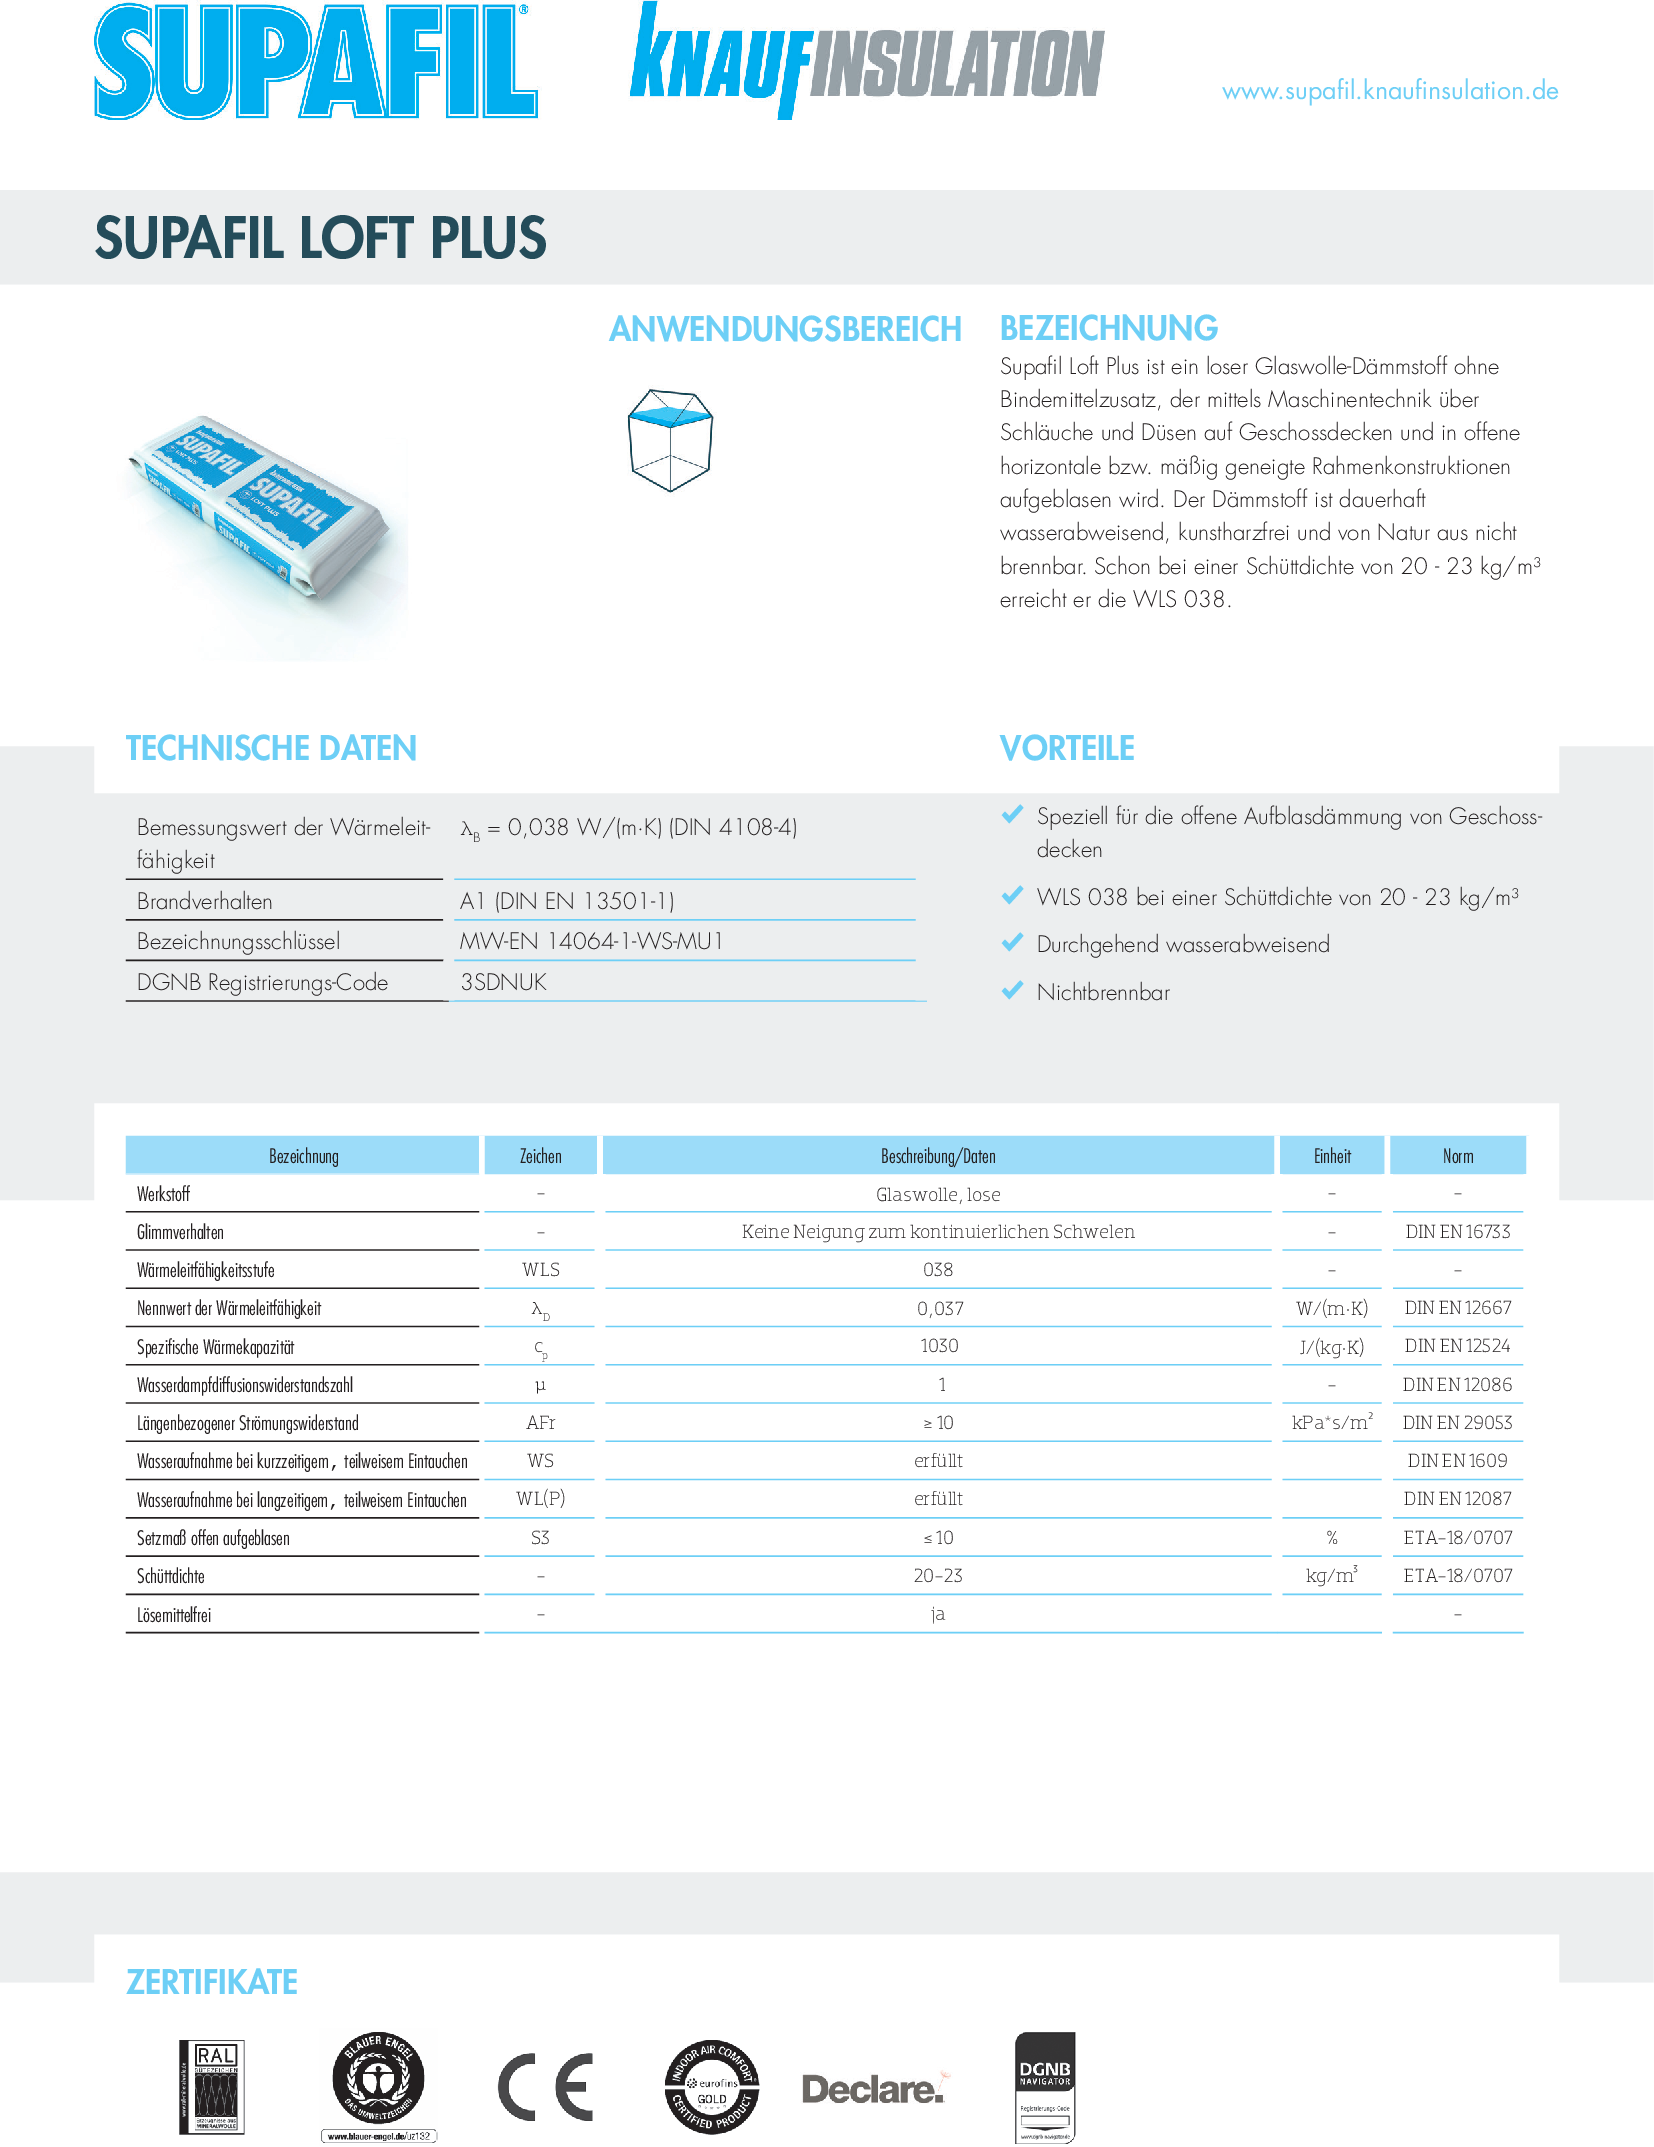 Datenblatt Knauf Insulation Supafil Loft Plus